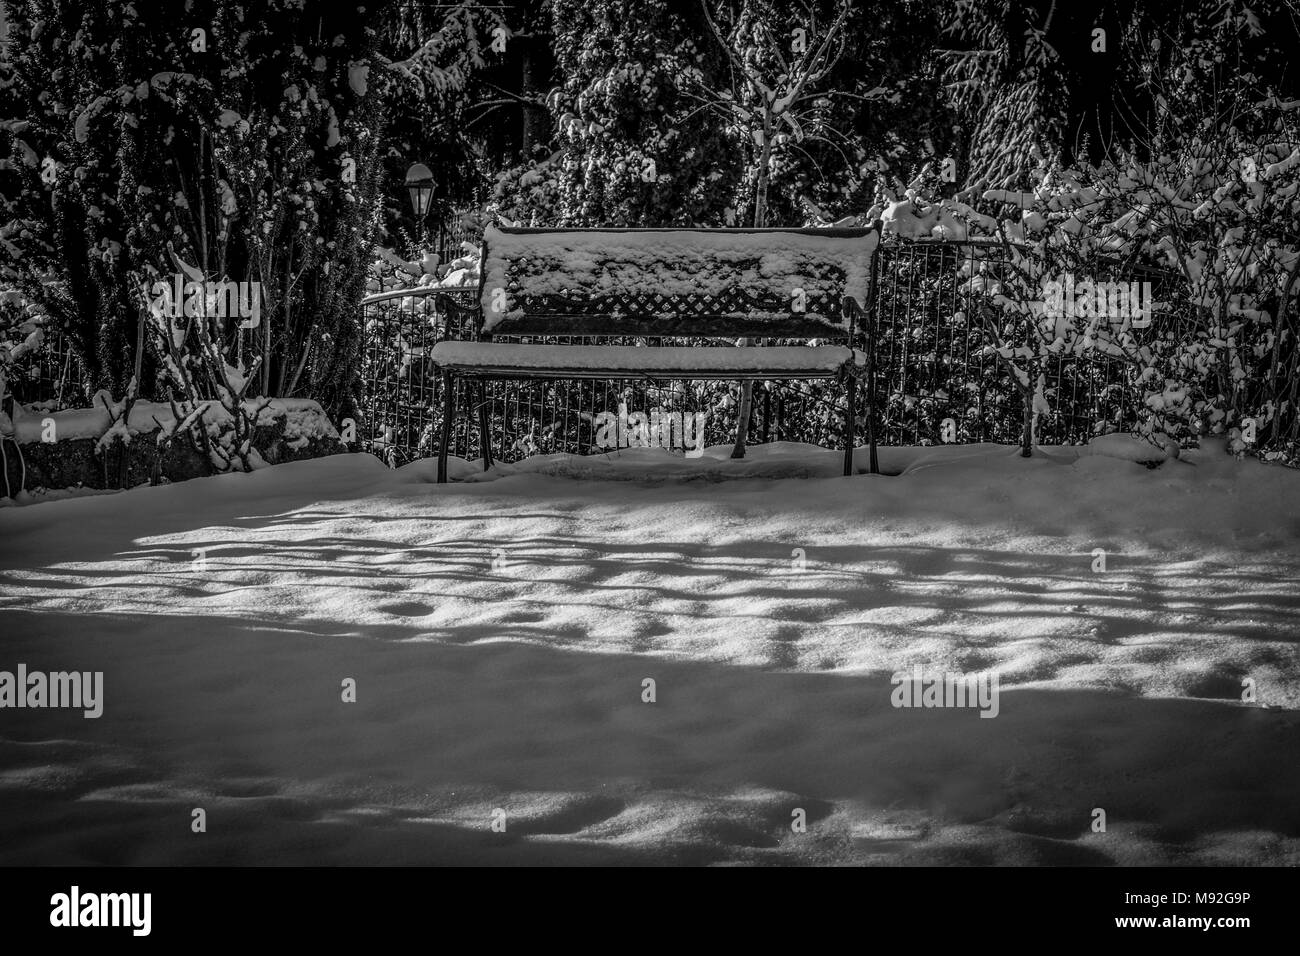 Panchina da giardino in inverno la neve e in bianco e nero. Panchina da giardino coperto di fresco di neve caduti, le luci del mattino. Foto Stock